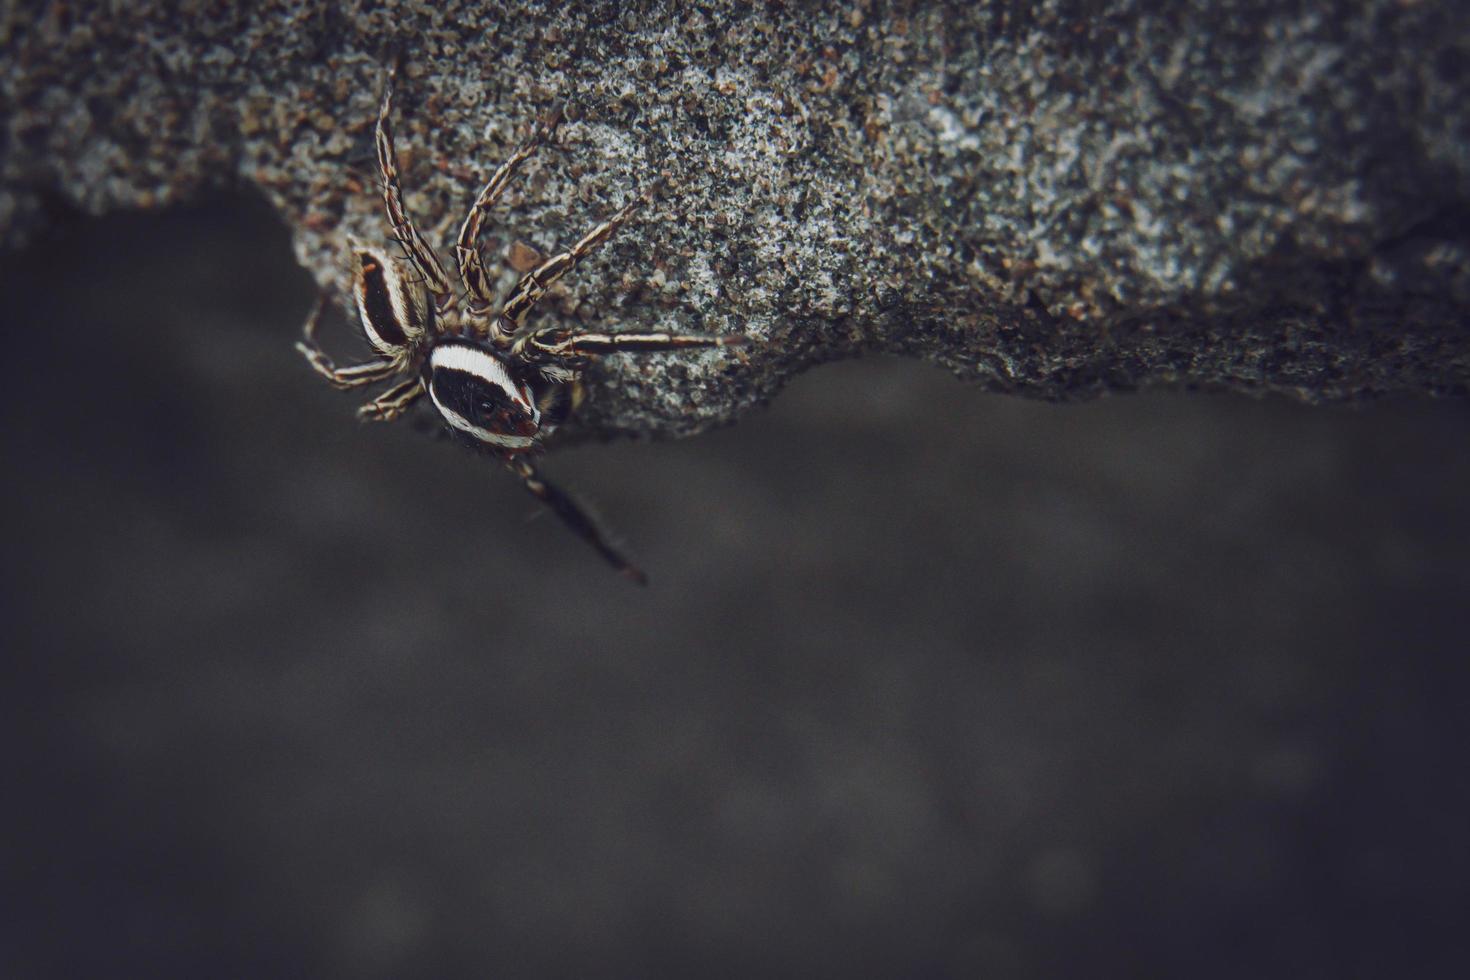 aranha lince listrada. tipos de aranha. imagens macro de aranha. foto de closeup de aranha.